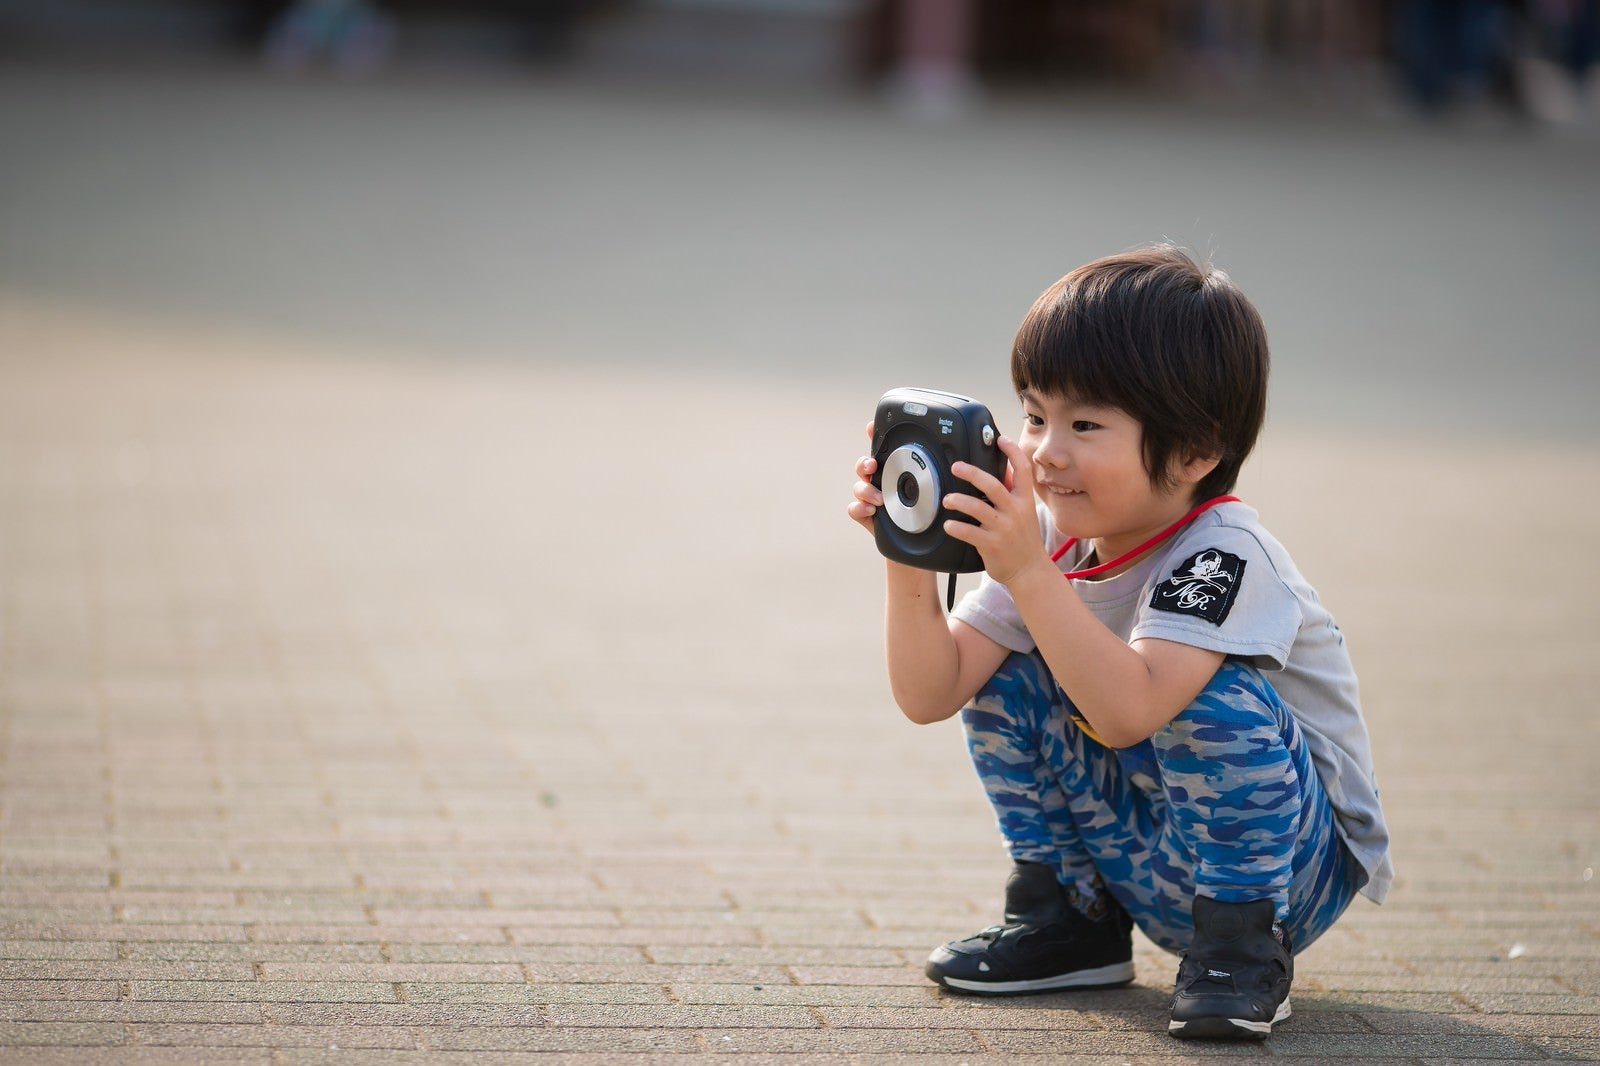 「インスタントカメラに興味津々の子供」の写真